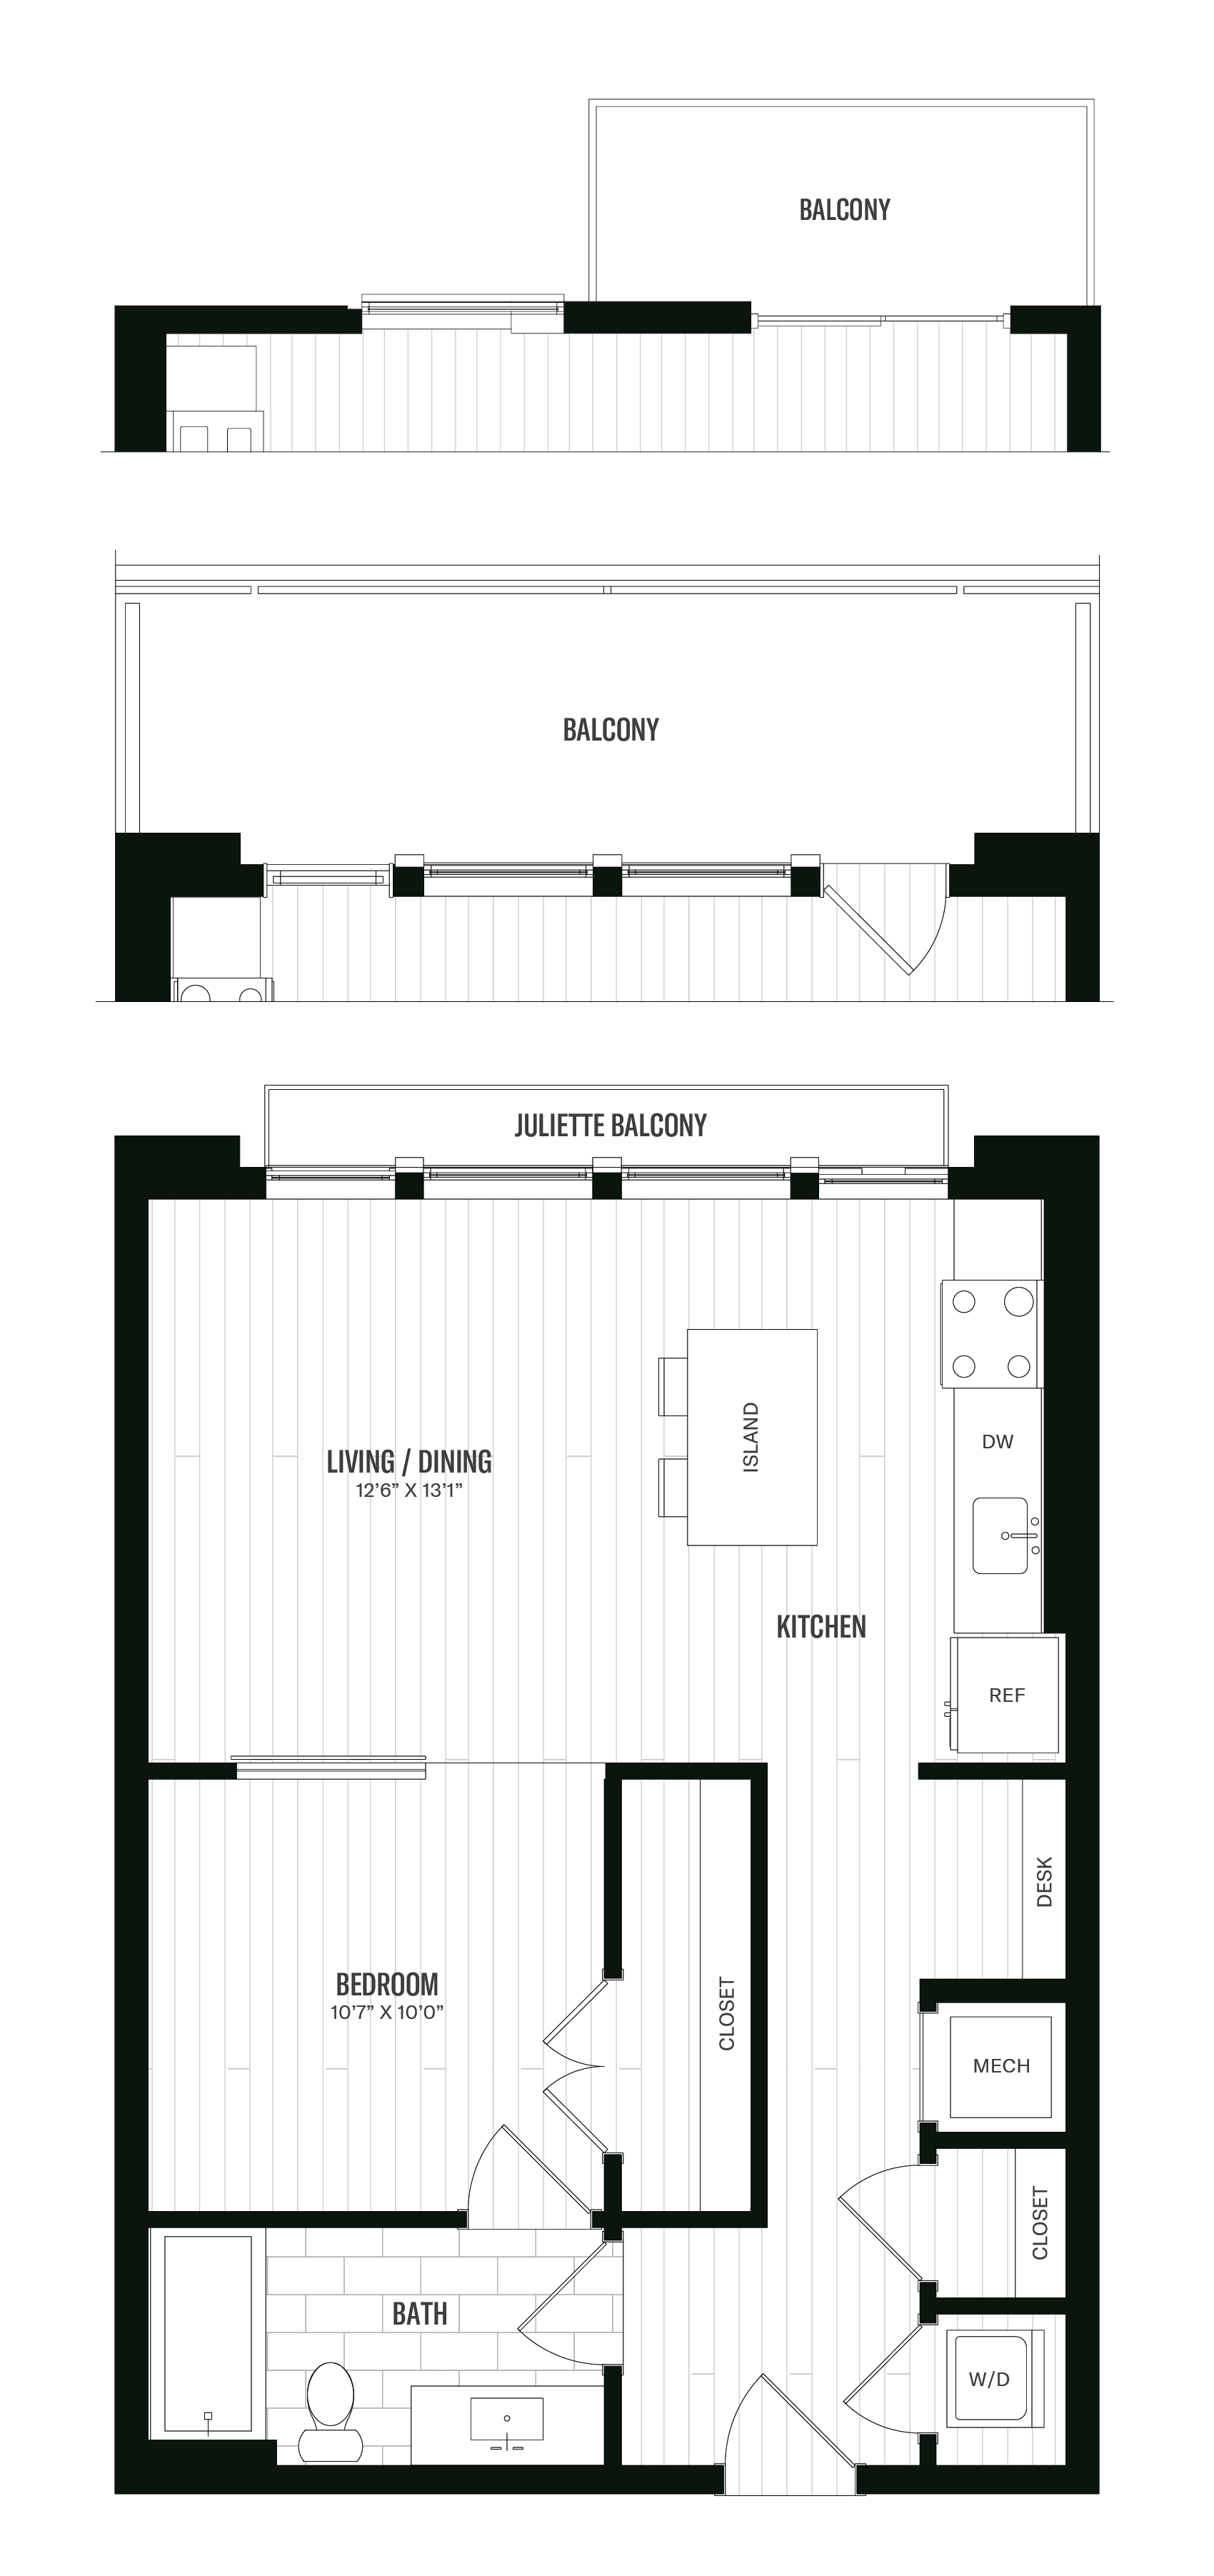 Floorplan image of unit 512